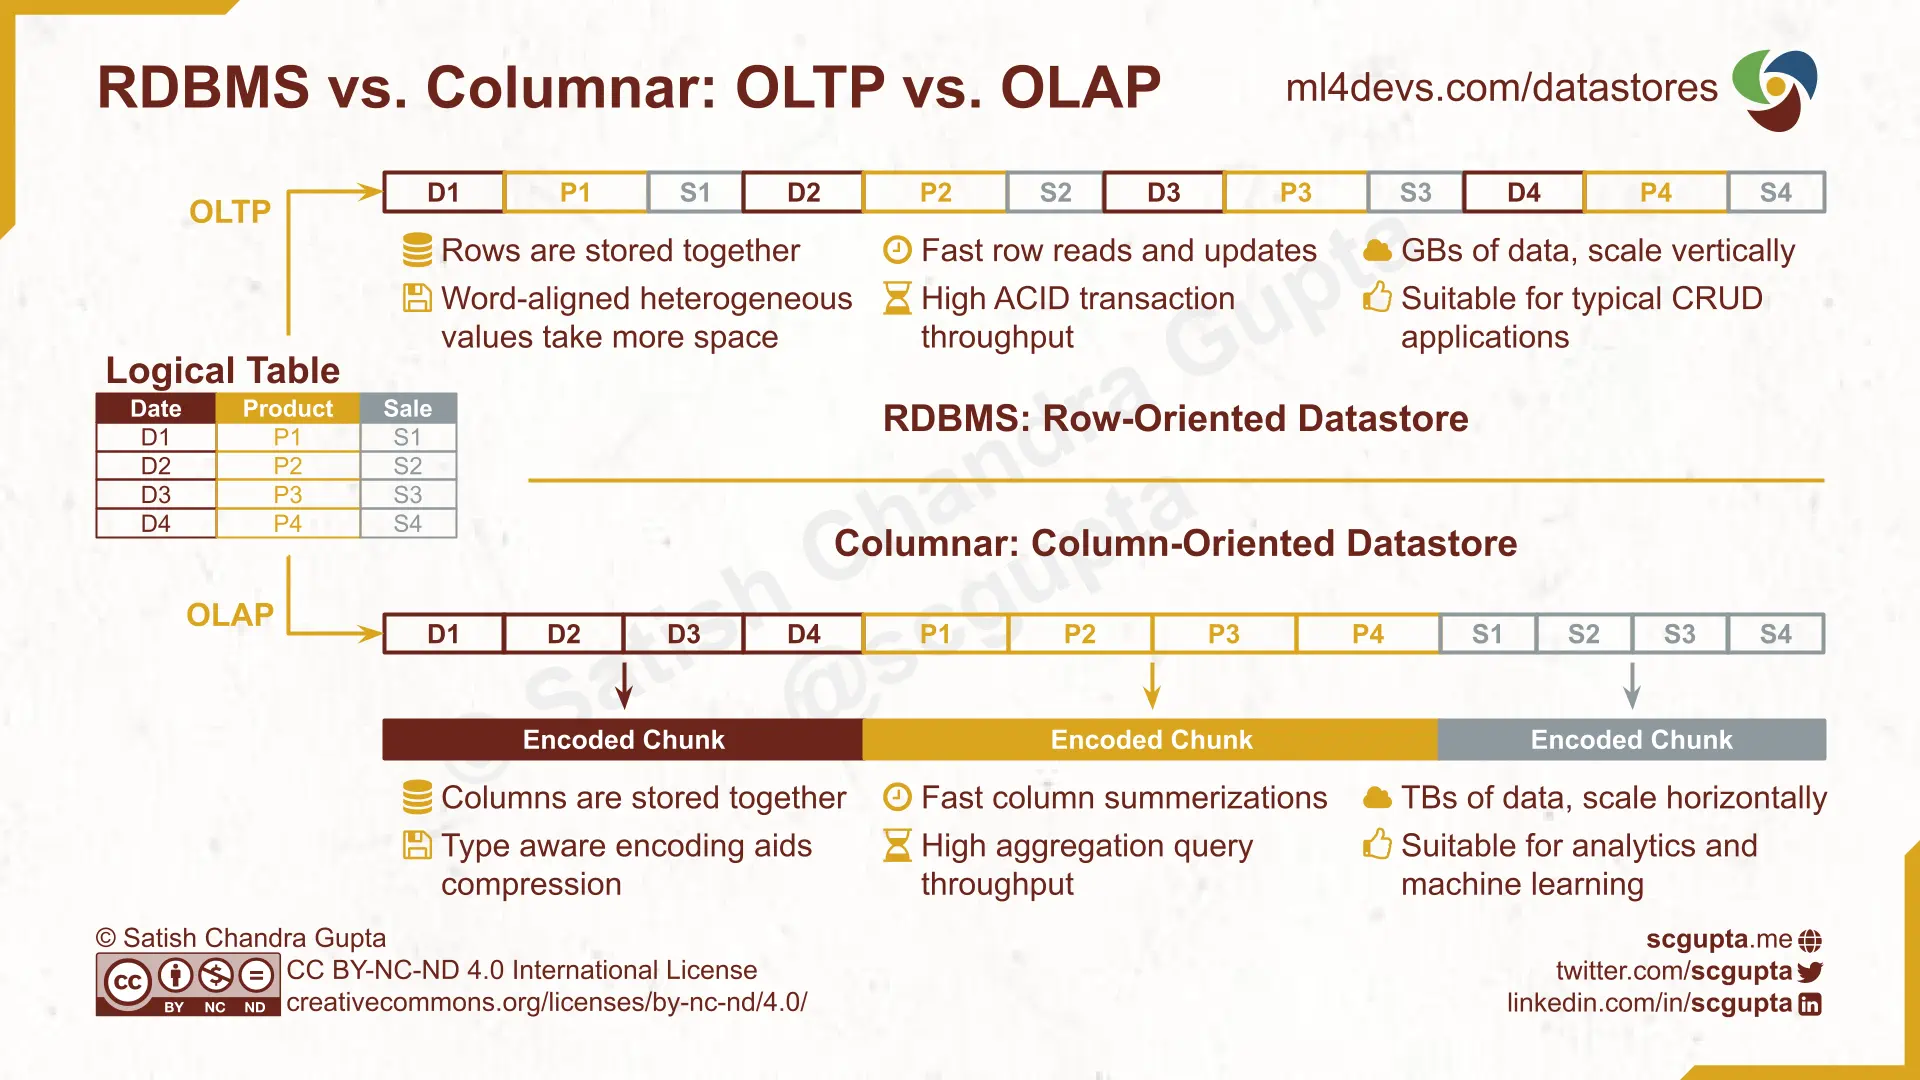 RDBMS vs. Columnar: Row-Oriented databases for OLTP and Column-Oriented databases for OLAP applications.